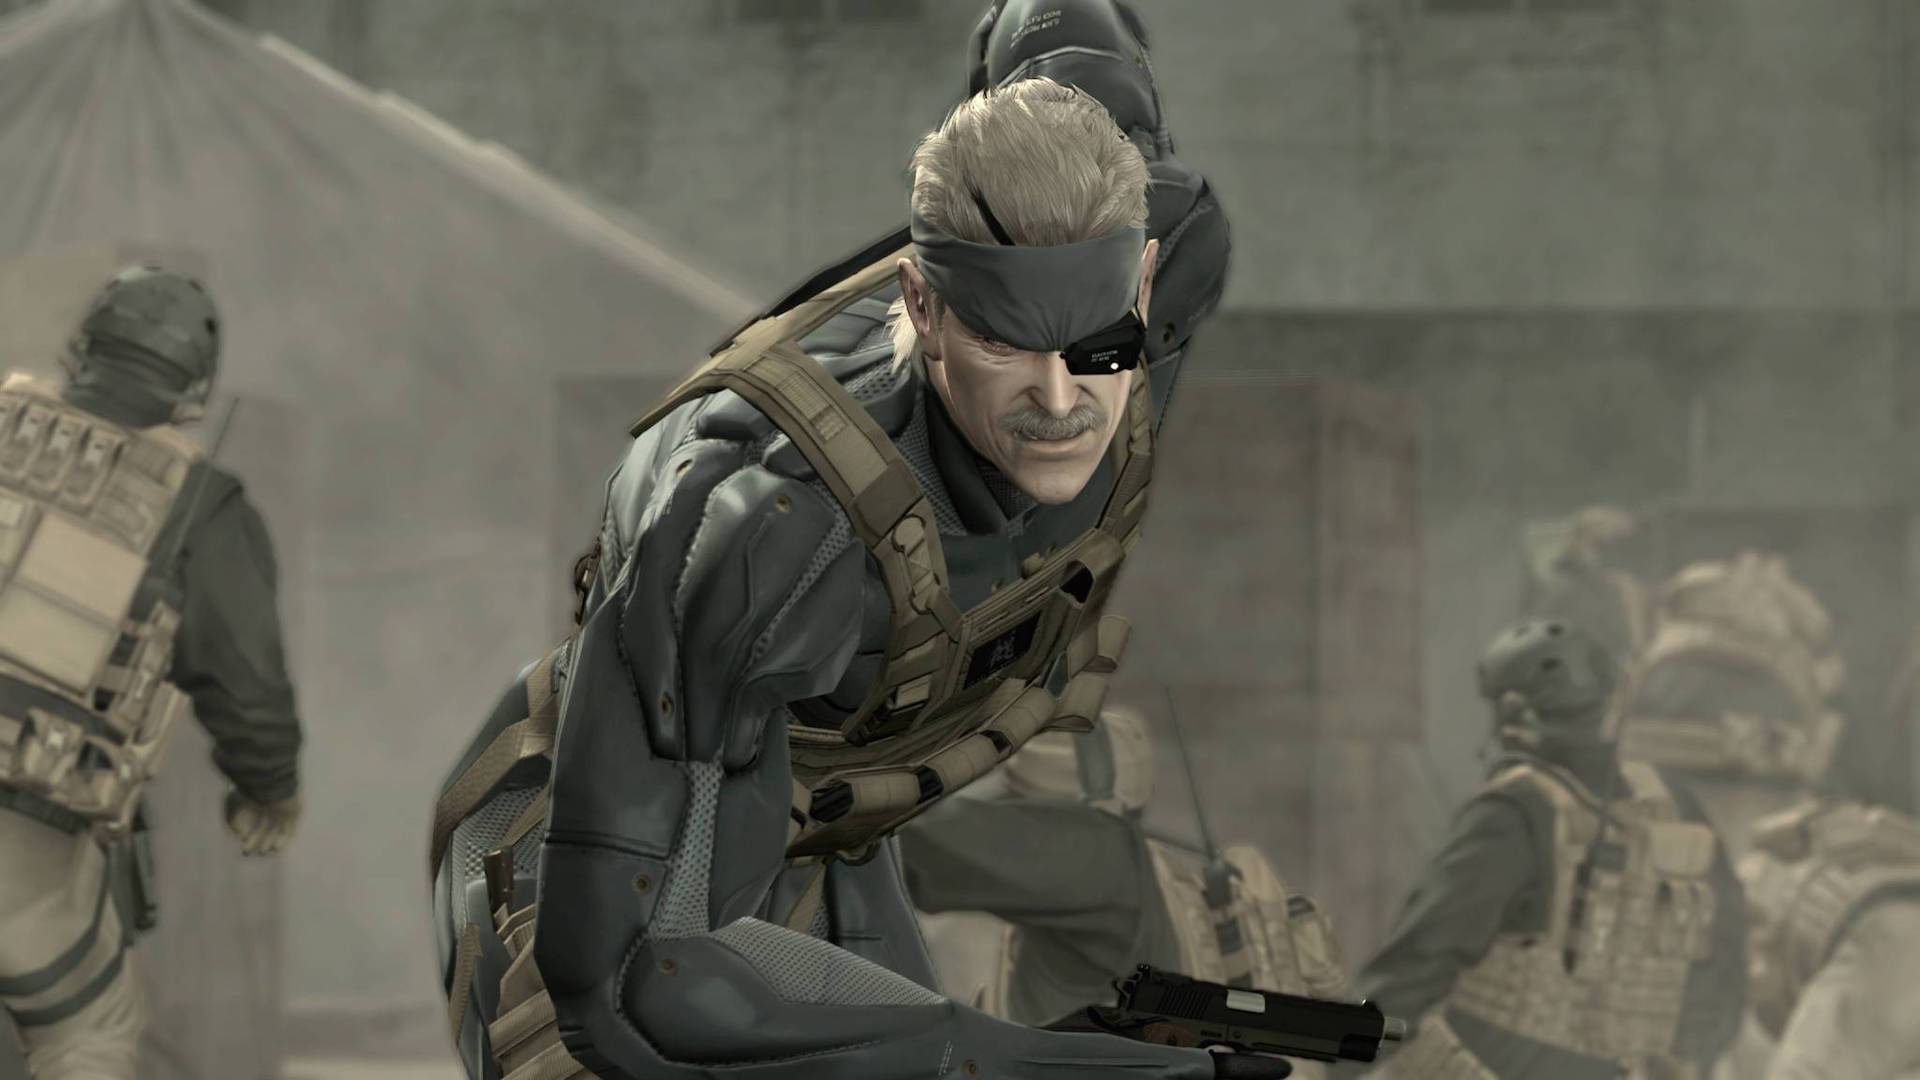 แฟรนไชส์ Metal Gear มียอดขายมากกว่า 59.8 ล้านหน่วยแล้ว